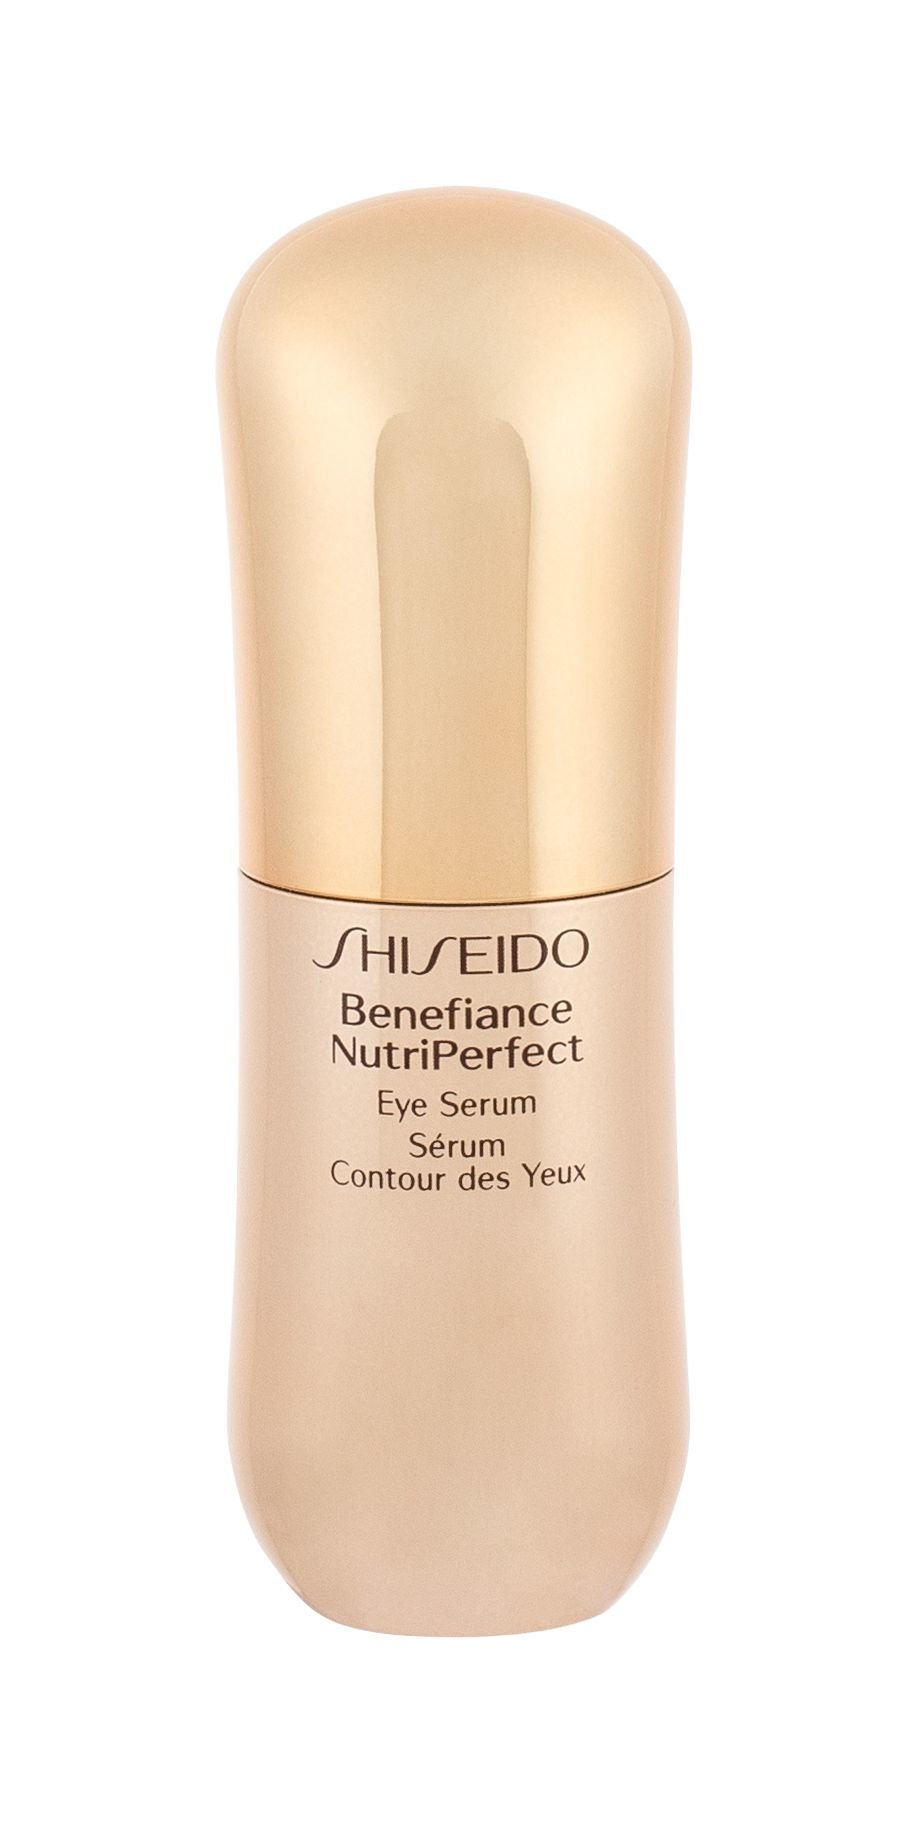 Shiseido Benefiance NutriPerfect 15ml paakių serumas